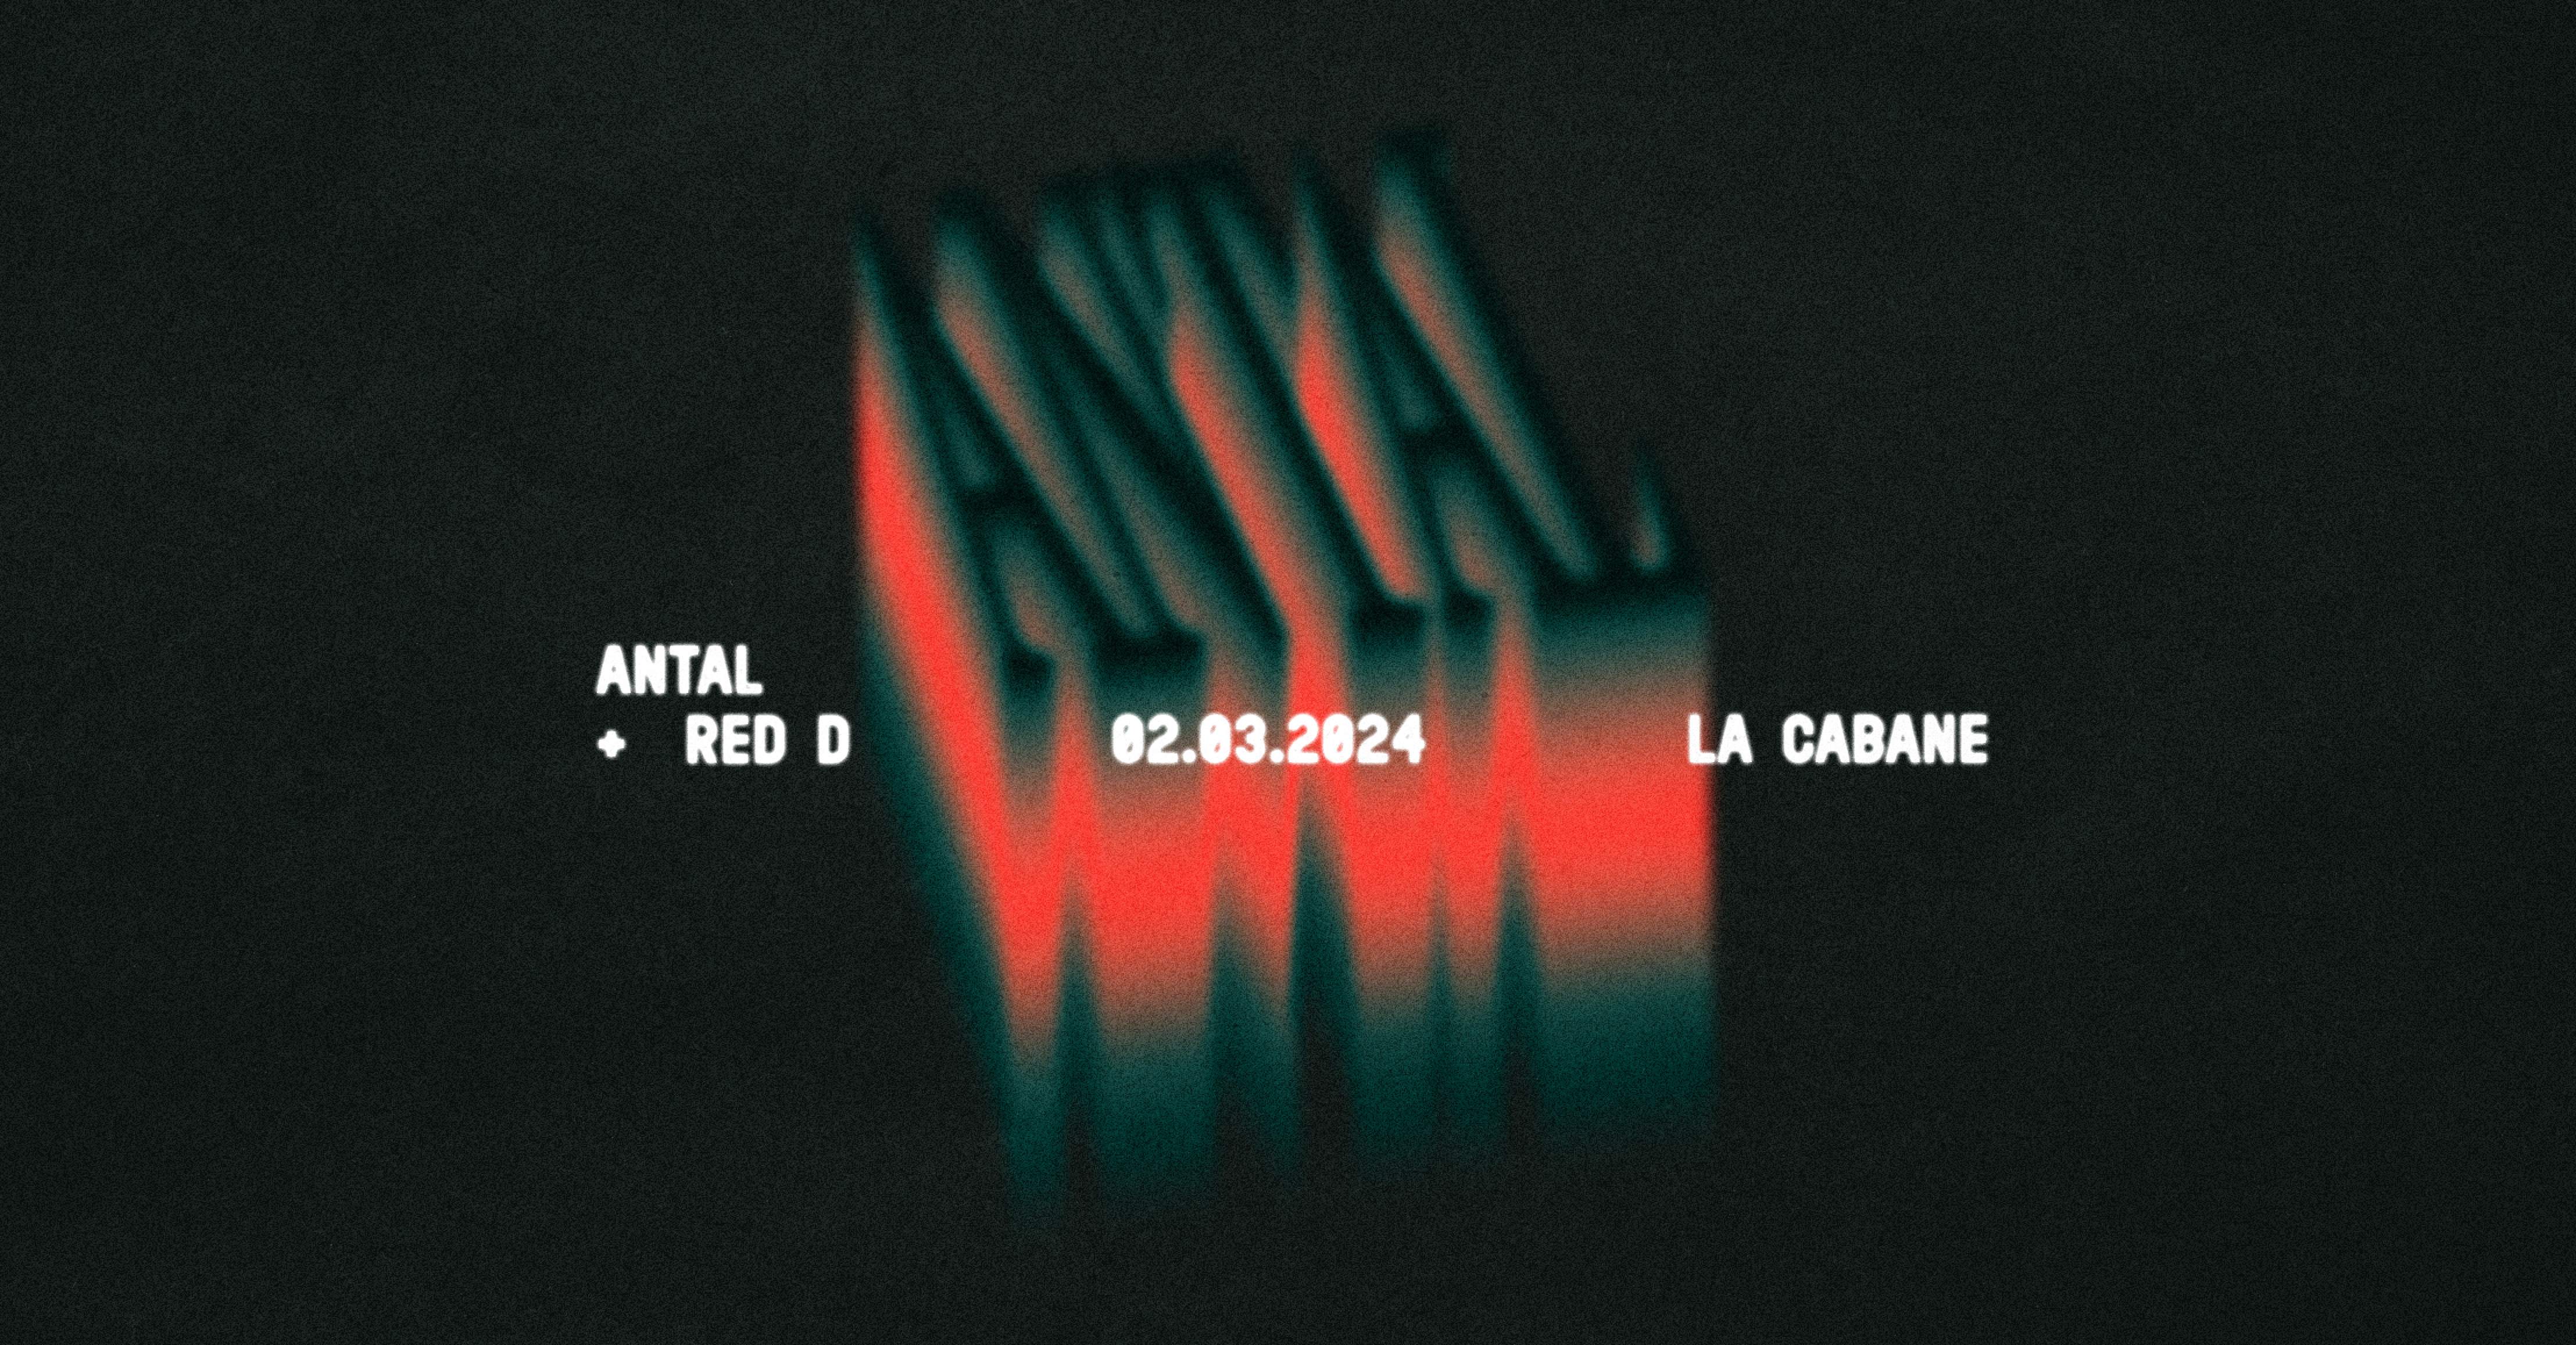 La Cabane - Antal + Red D - フライヤー表